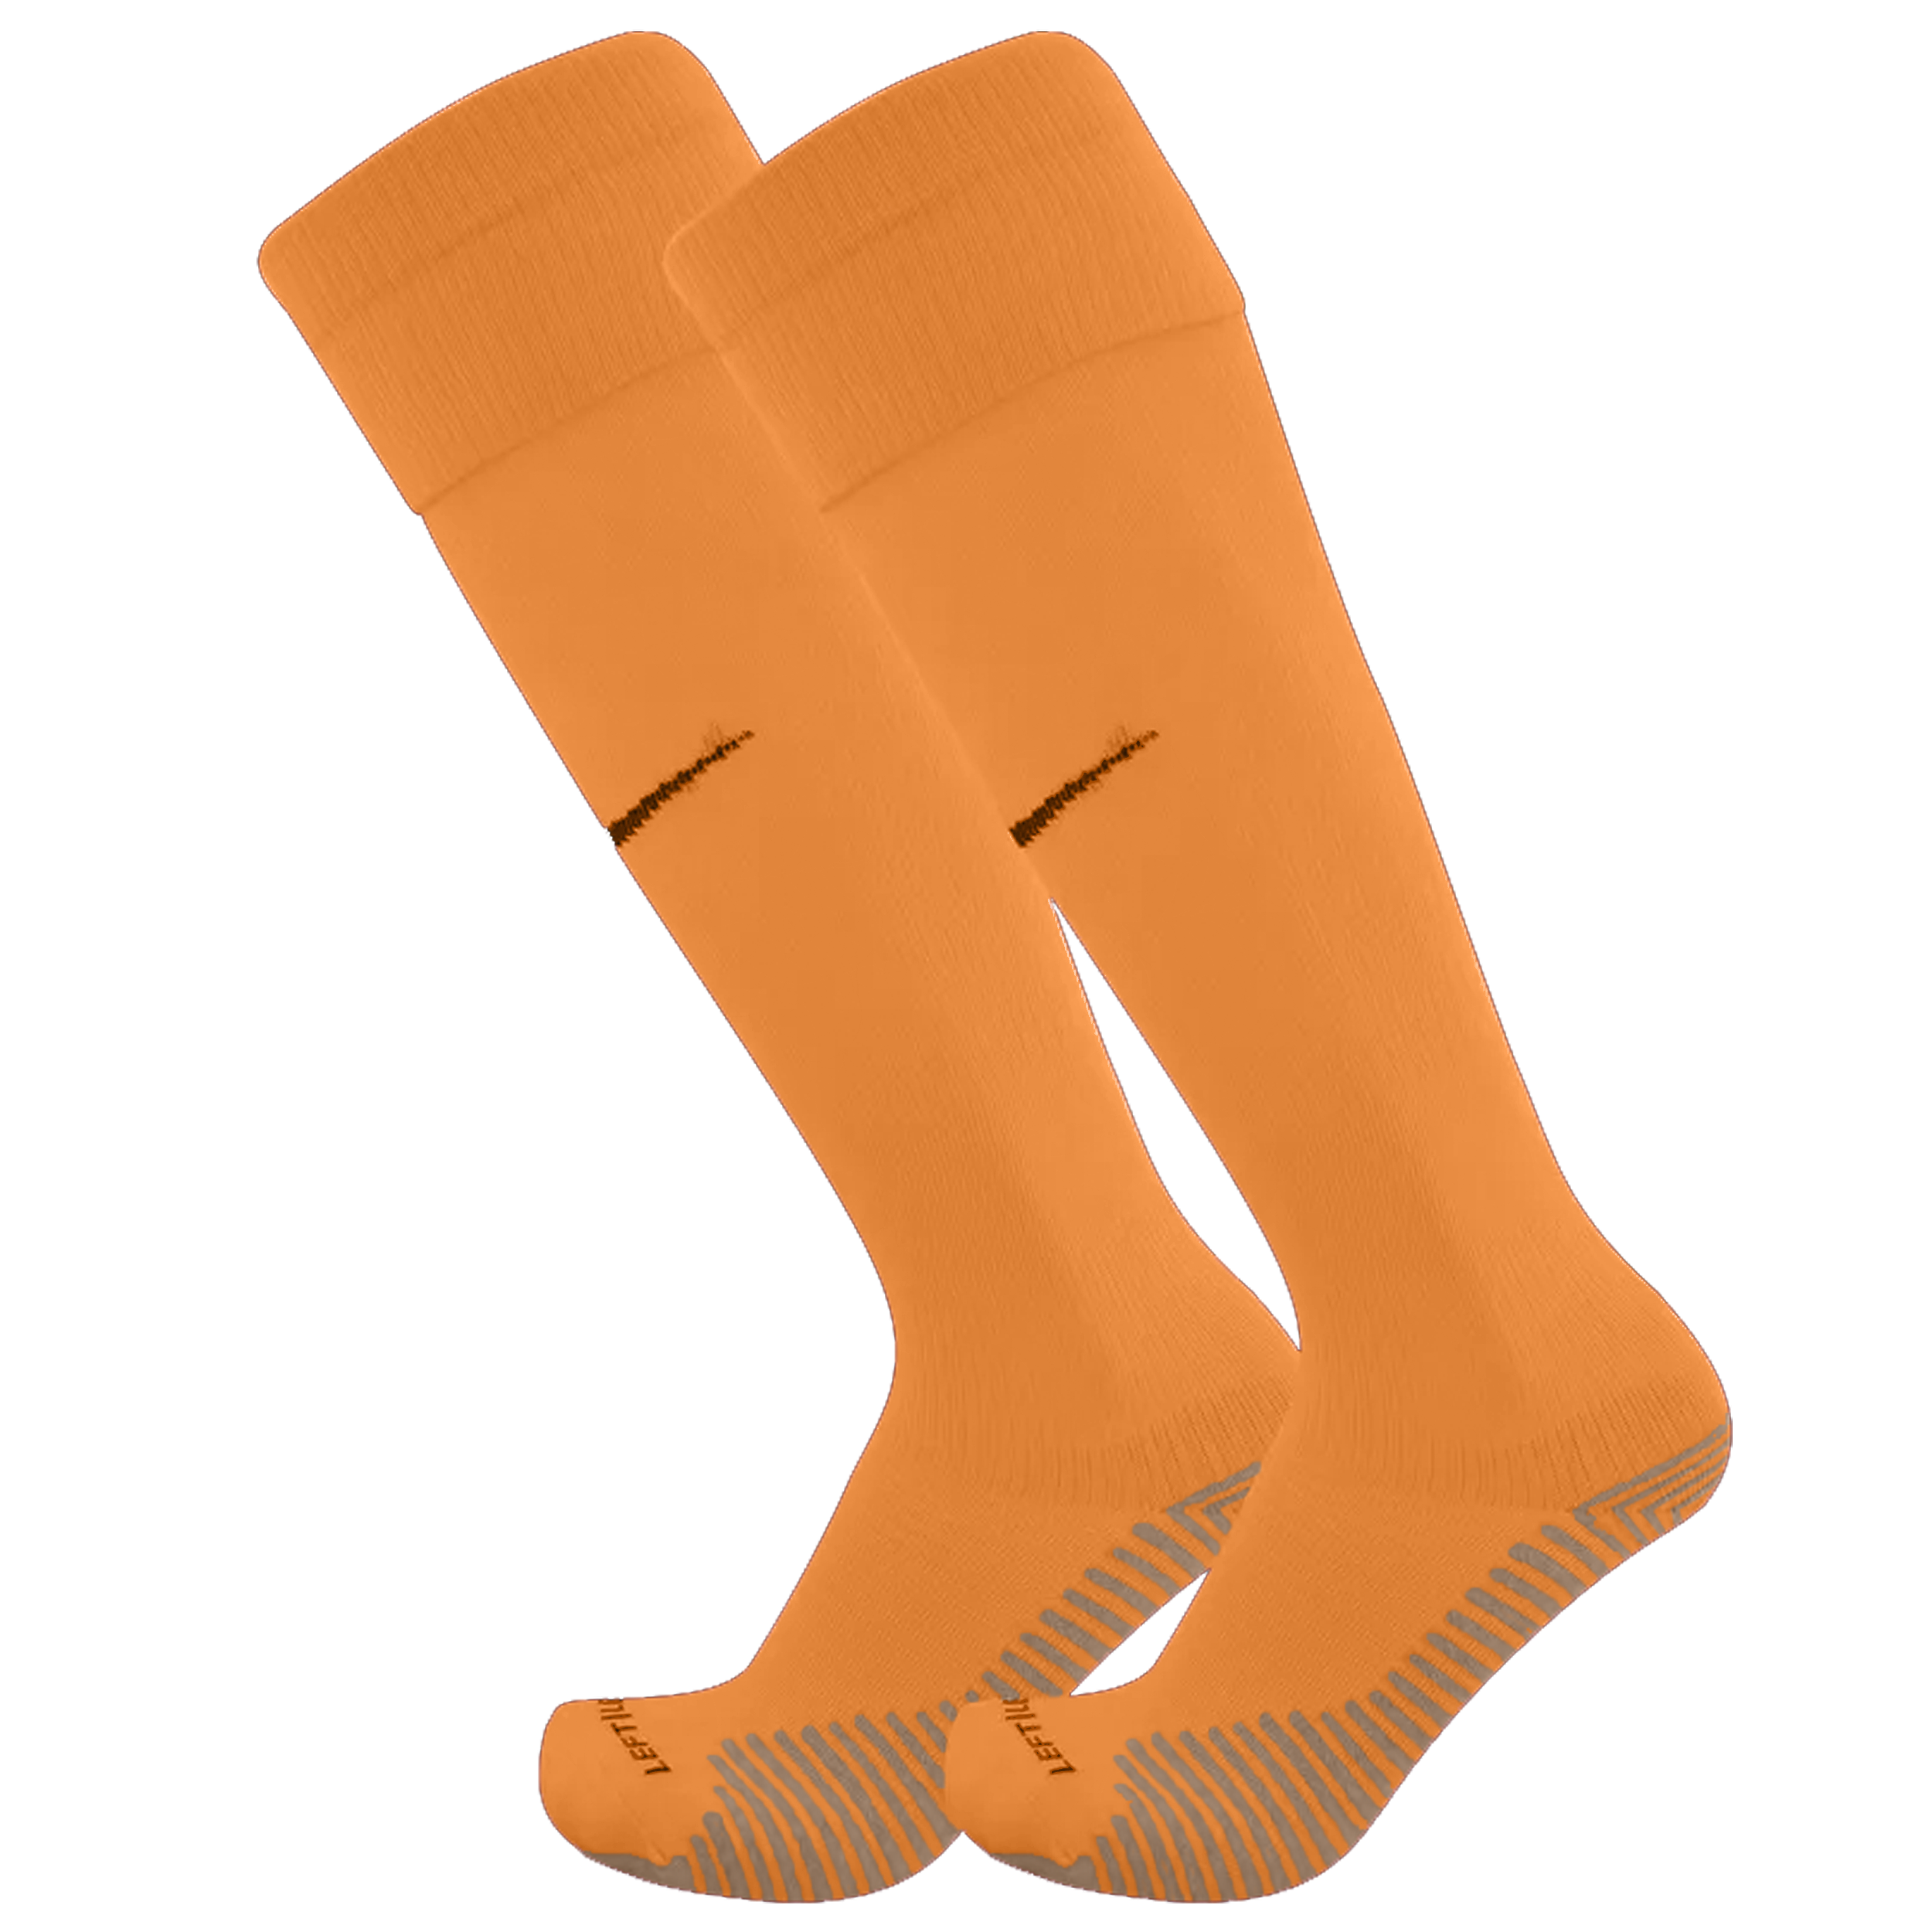 Nike Promo GK-Socks orange